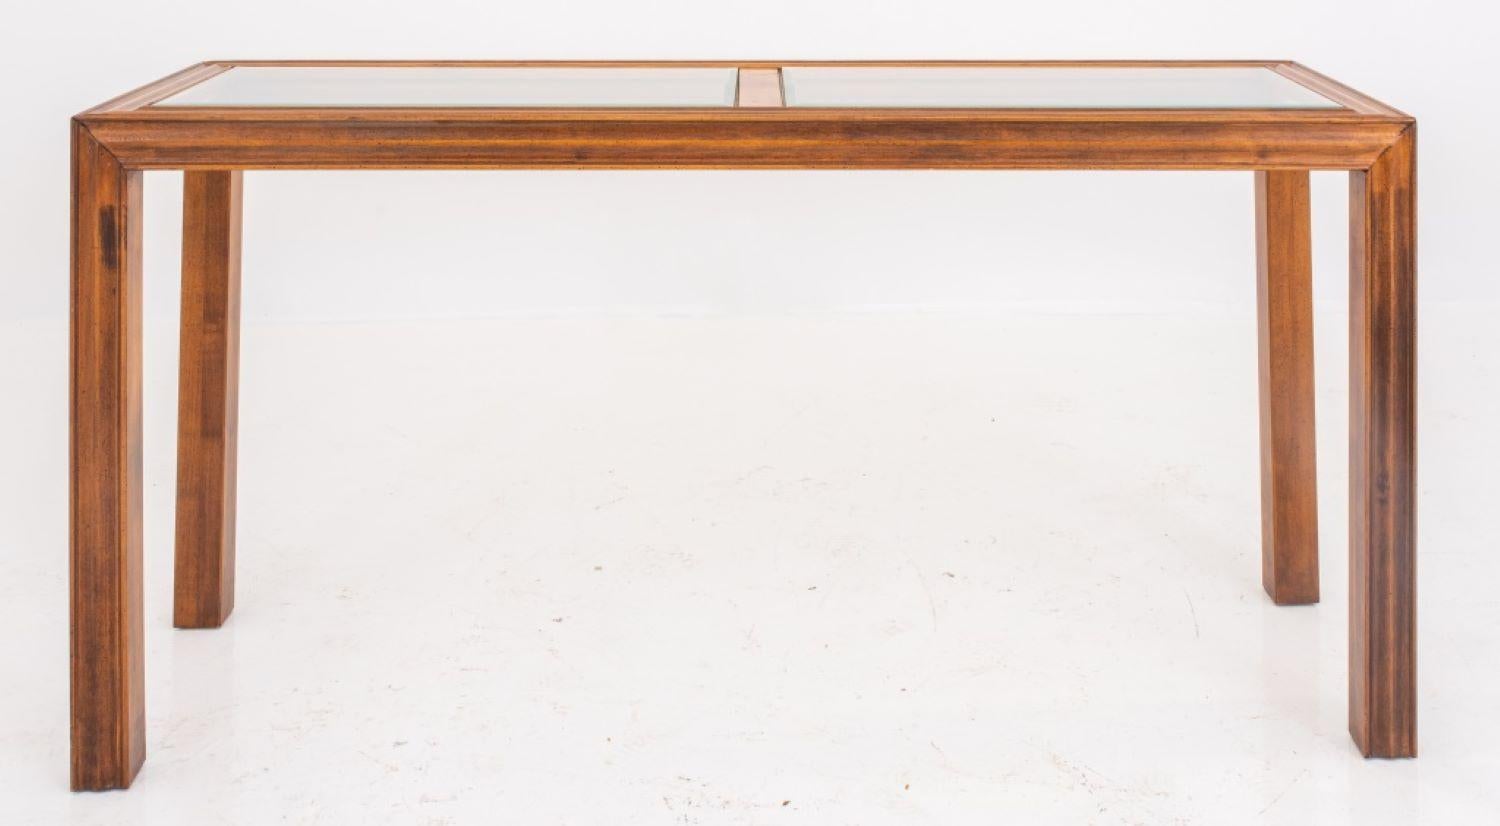 Table moderne en bois et en verre de marque John Widdicomb, années 1980, de forme rectangulaire avec un cadre moulé et des pieds droits moulés, le dessus étant garni de deux panneaux en verre biseauté. 26 po H x 55 po L x 16,5 po P